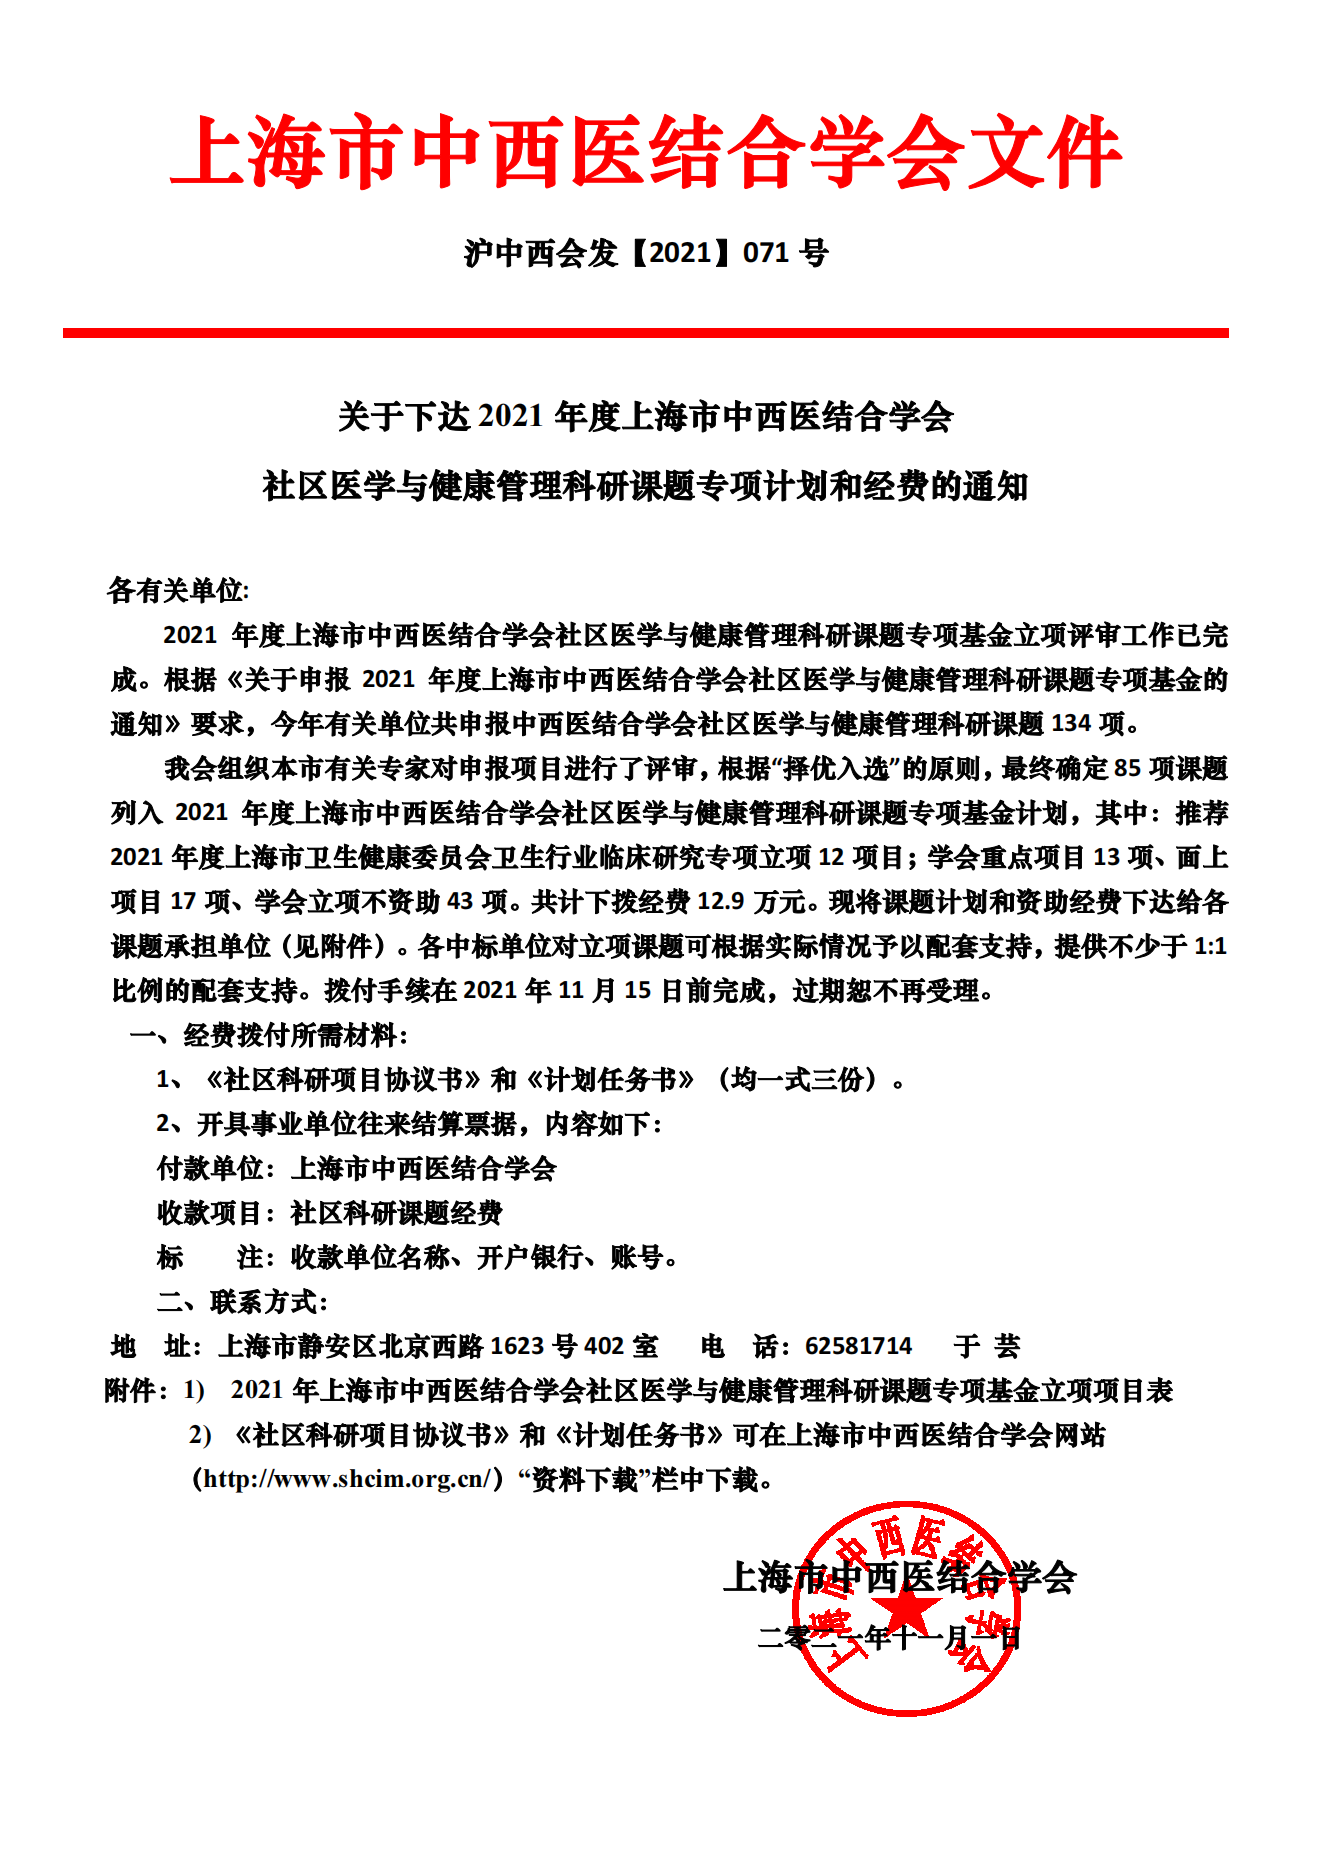 2021年上海市中西医结合学会社区医学与健康管理科研基金立项通知_00.png